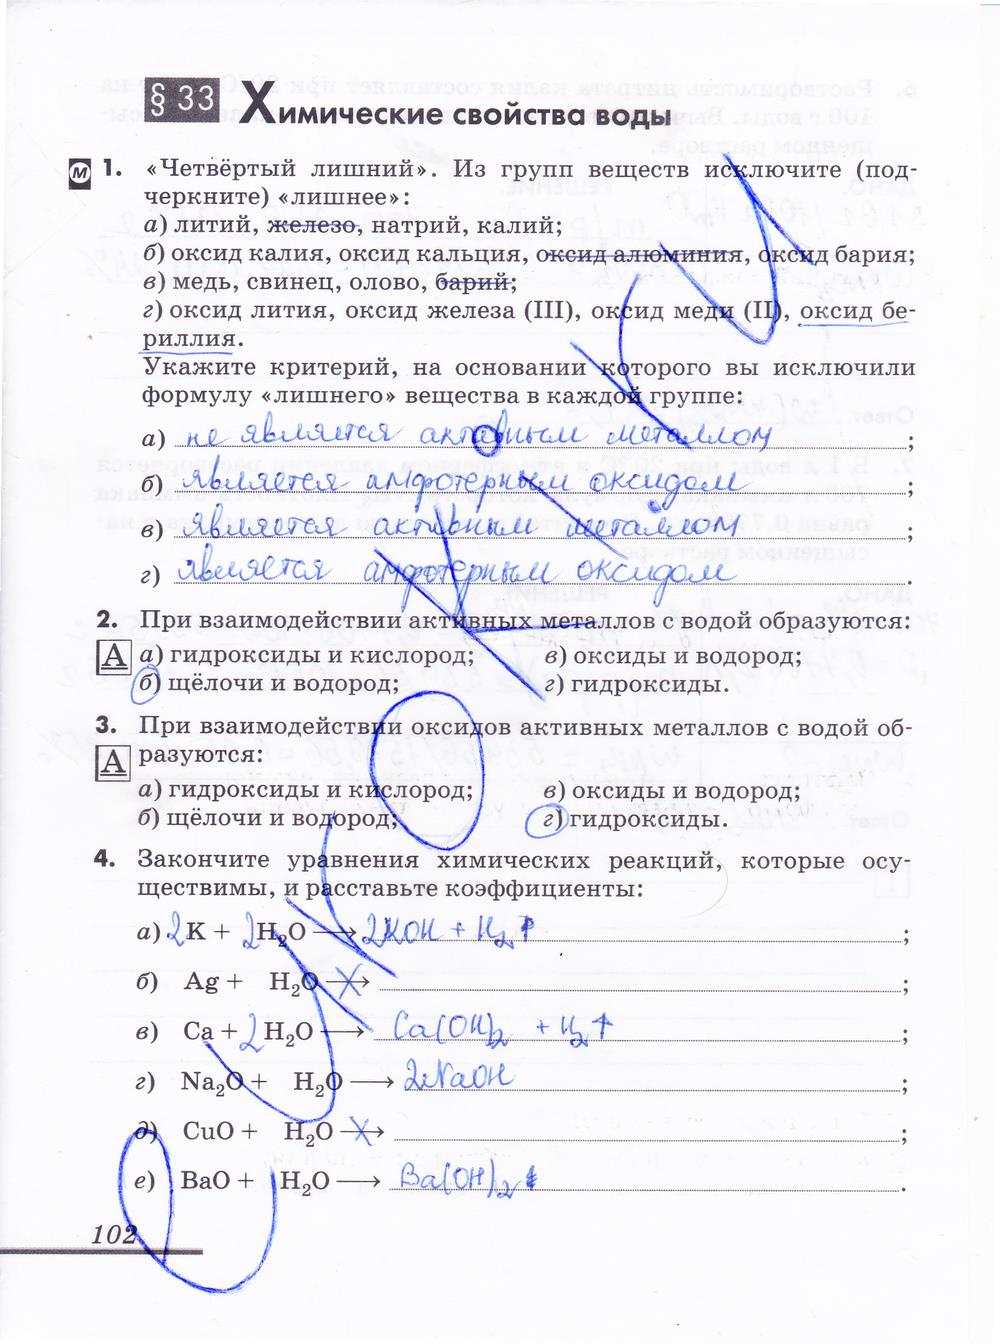 гдз 8 класс рабочая тетрадь страница 102 химия Еремин, Дроздов